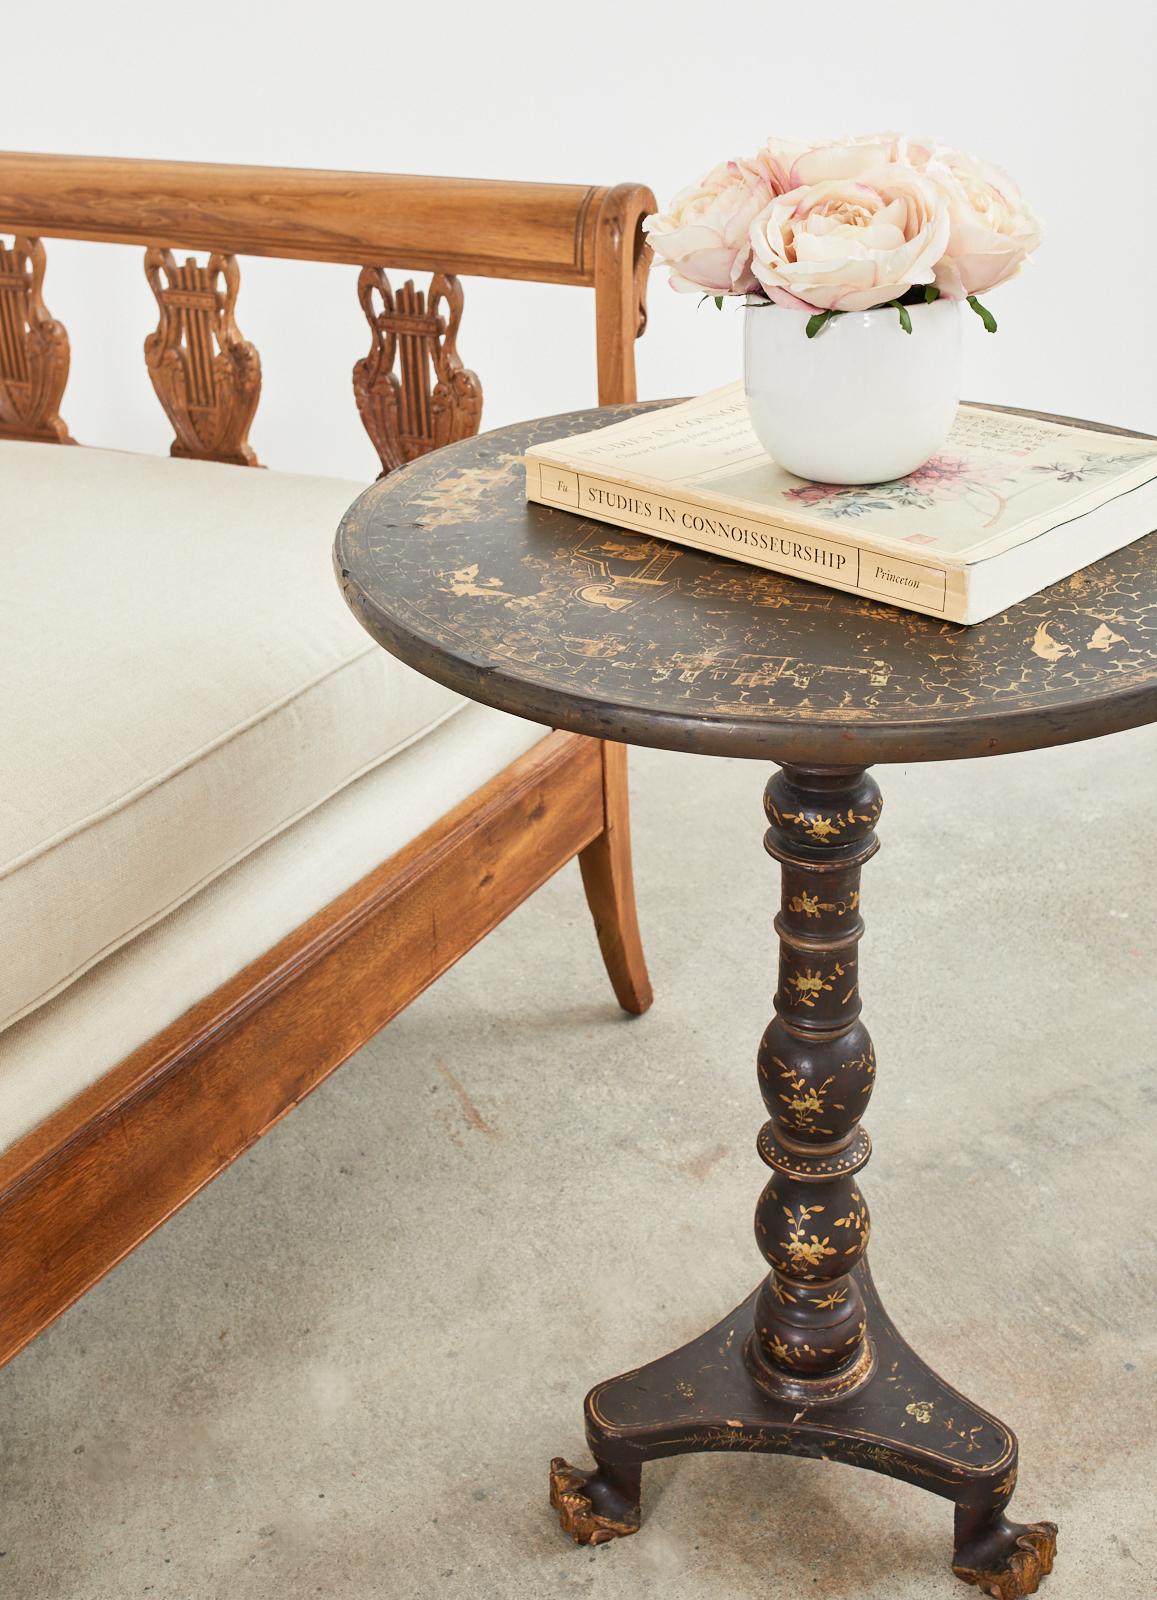 englischer Sockeltisch mit kippbarer Platte aus dem 19. Jahrhundert im Stil des Chinoiserie-Revivals. Der runde Tisch besteht aus einem Vogelkäfig, der auf einer gedrechselten Säule mit dreibeinigen Beinen ruht. Die Beine enden mit Klauenfüßen. Der